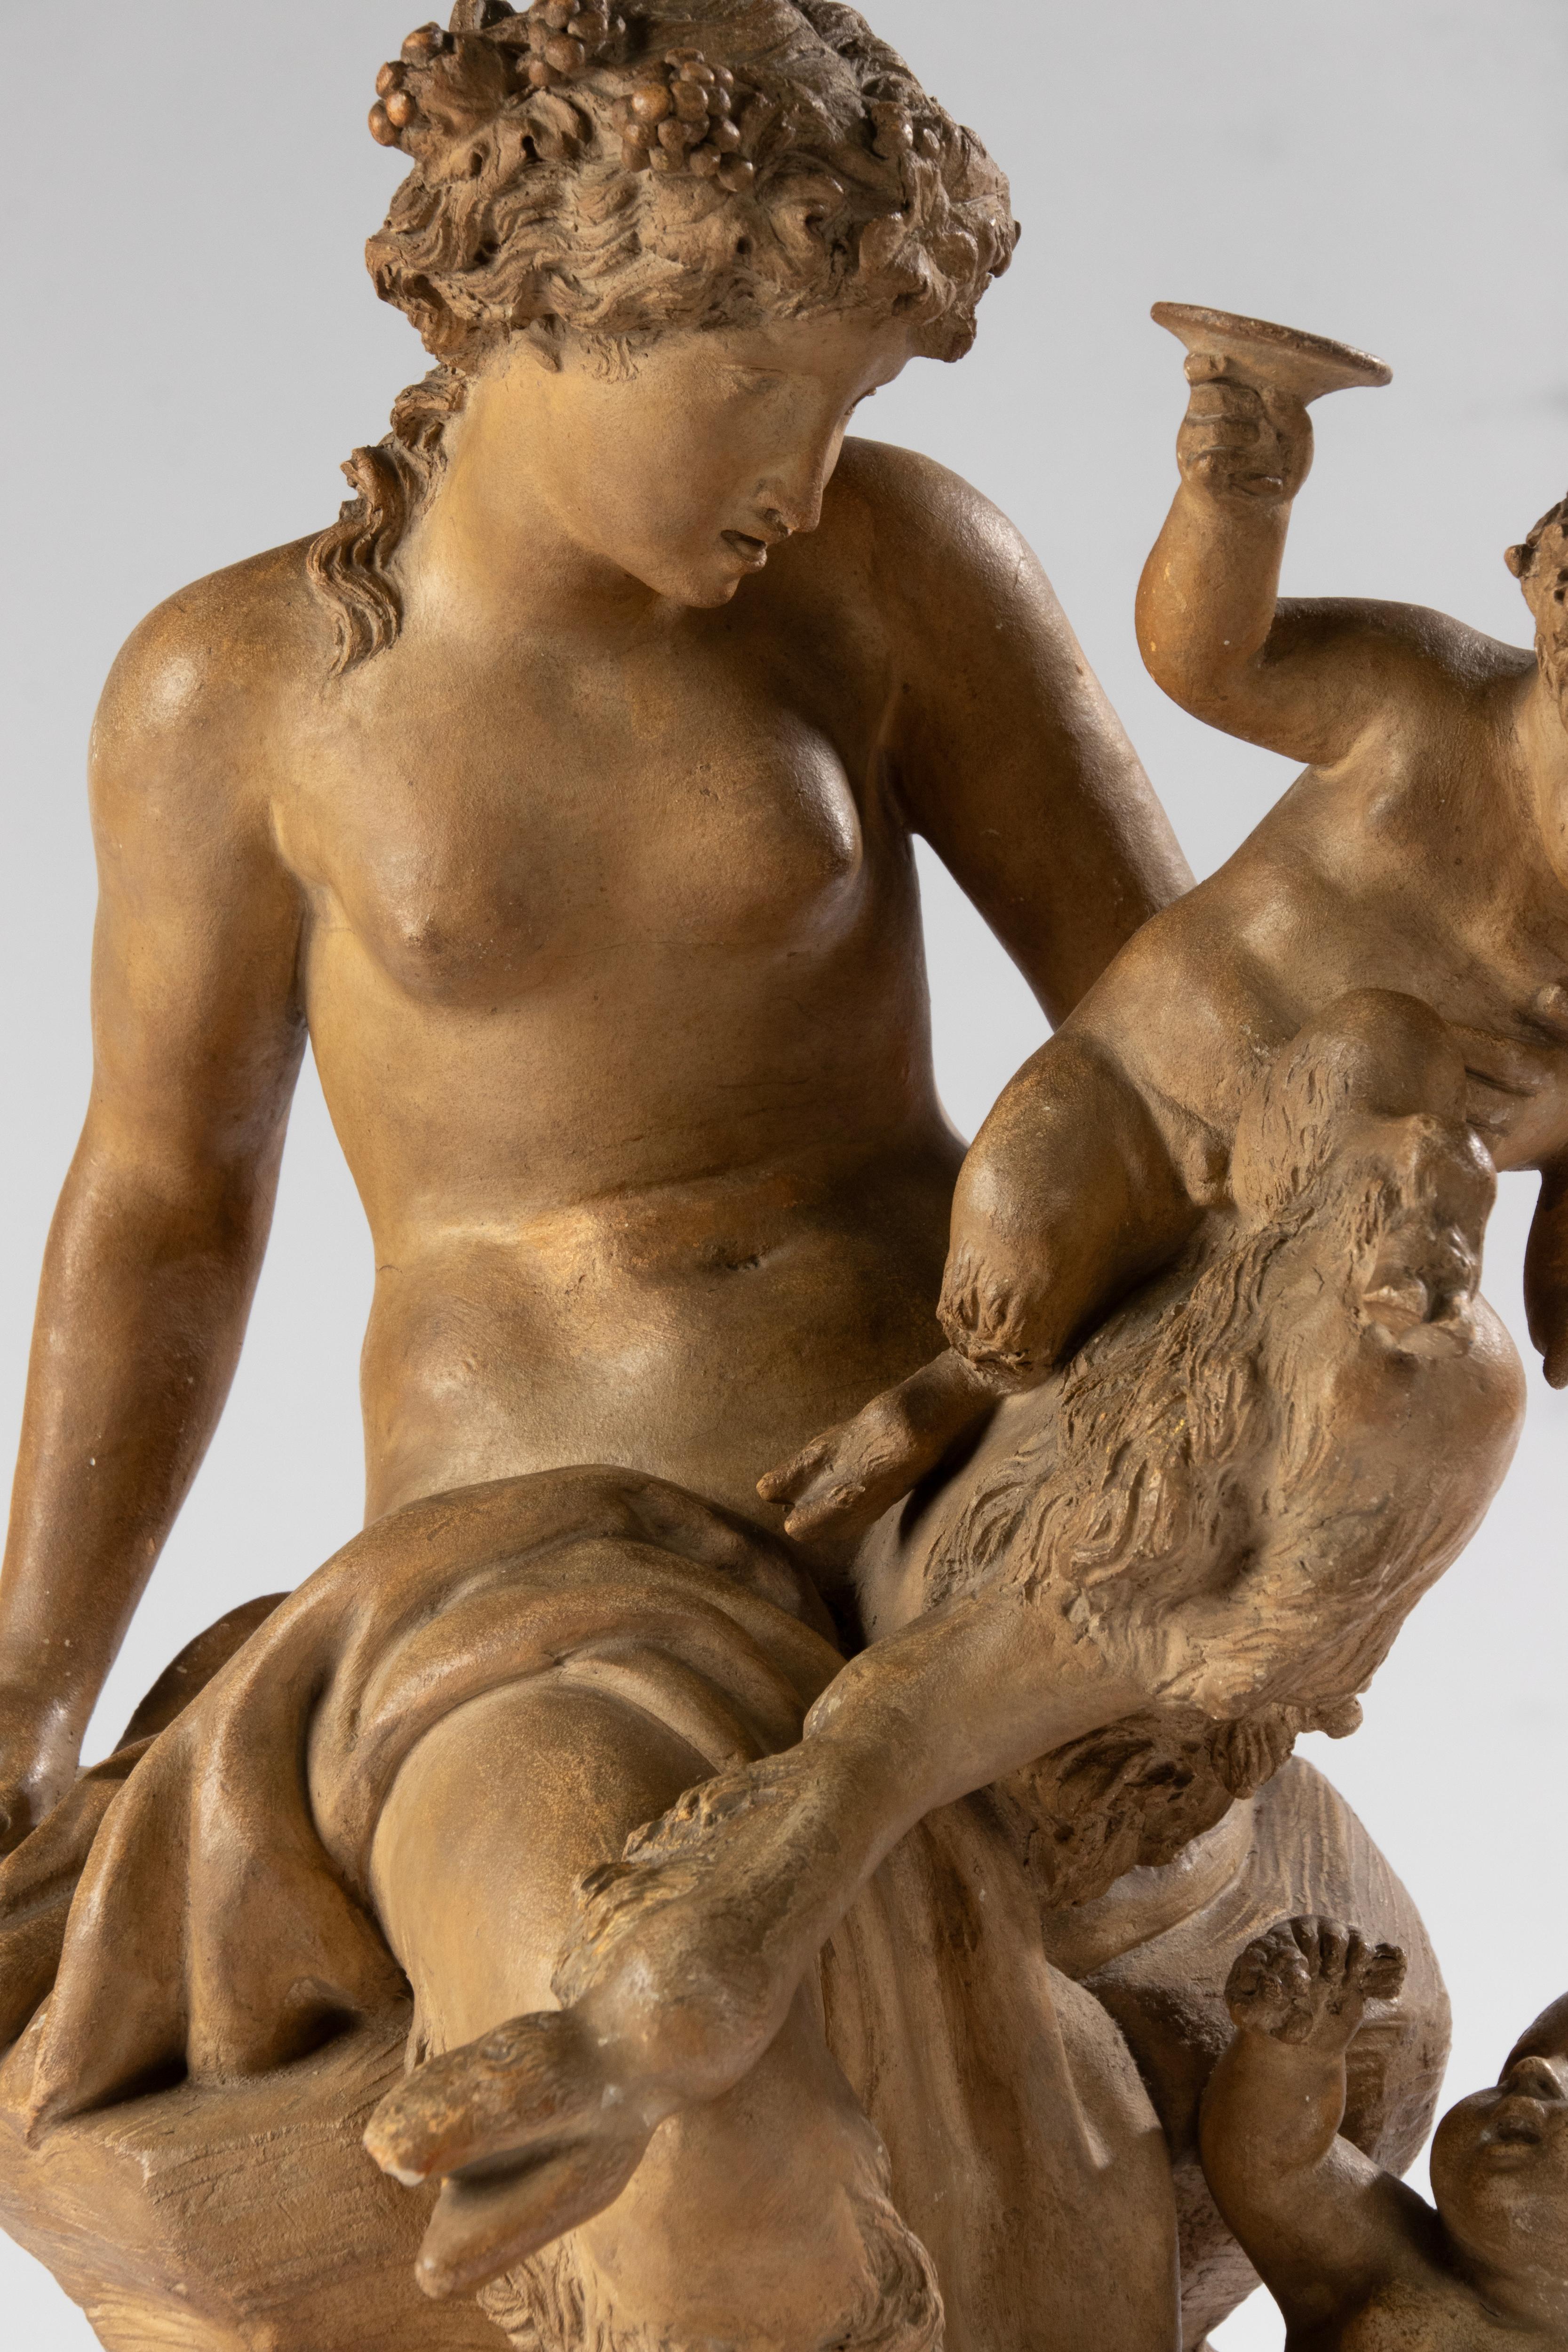 Feine französische mythologische Terrakotta-Skulptur nach Clodion (Claude Michel Clodion 1738 - 1814), die einen jungen weiblichen Faun/Satyr darstellt, der mit zwei Bacchantinnen spielt, von denen eine einen Kelch hält, umgeben von Weinblättern.